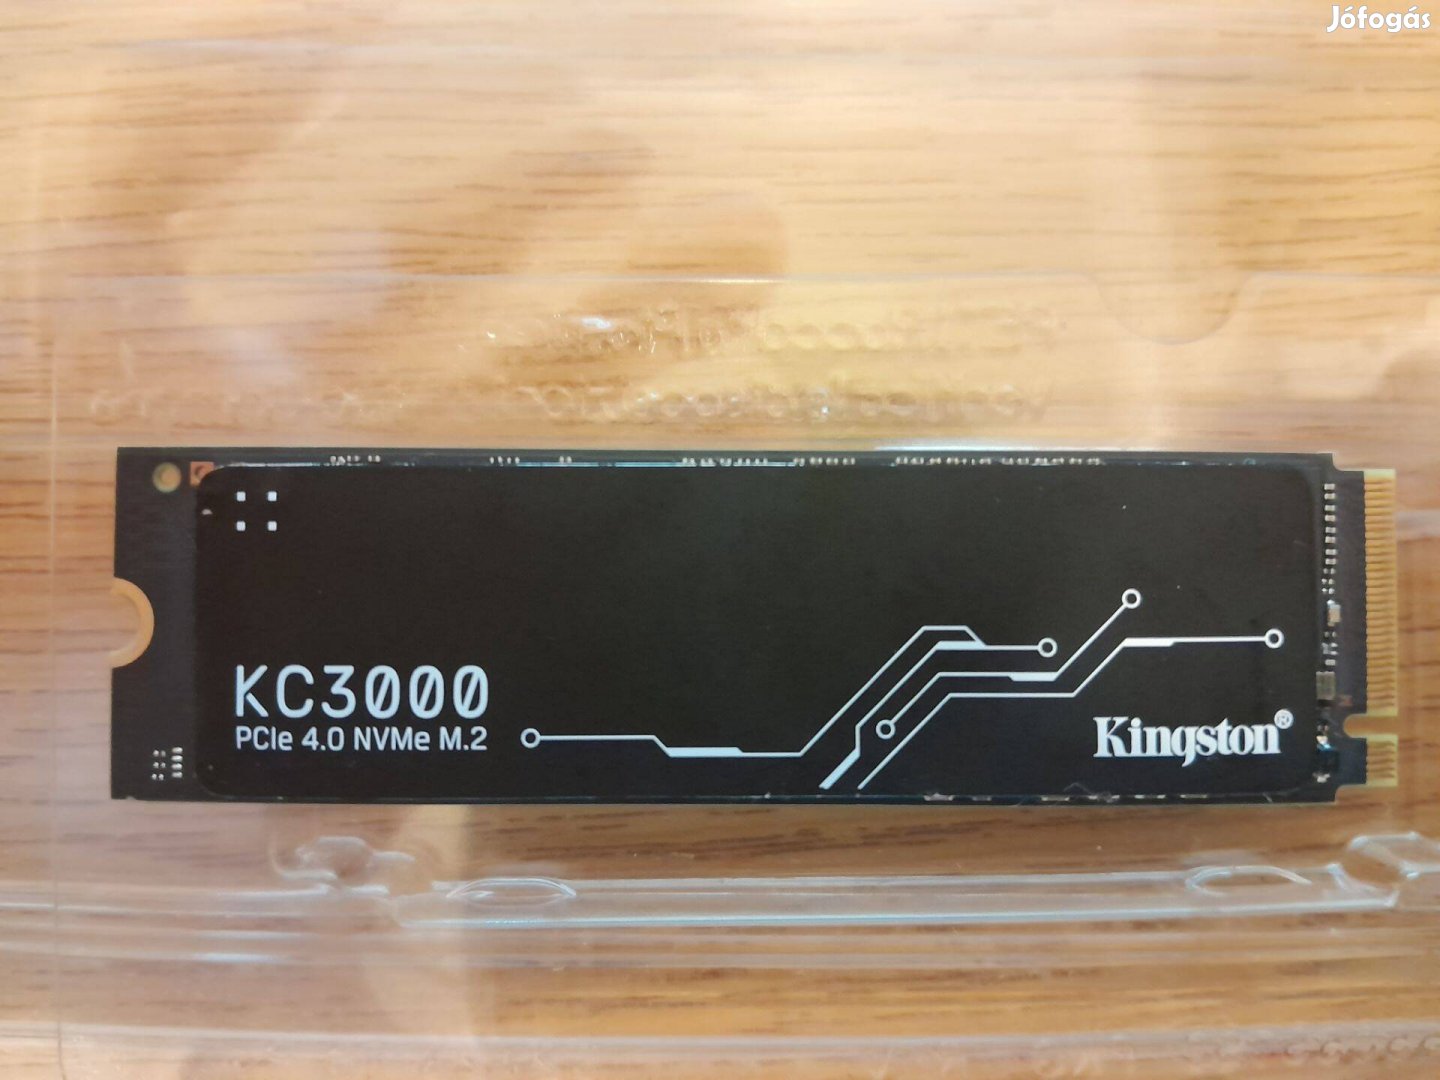 Kingstone SSD KC3000 Pcle 4.0 Nvme M.2 1024GB